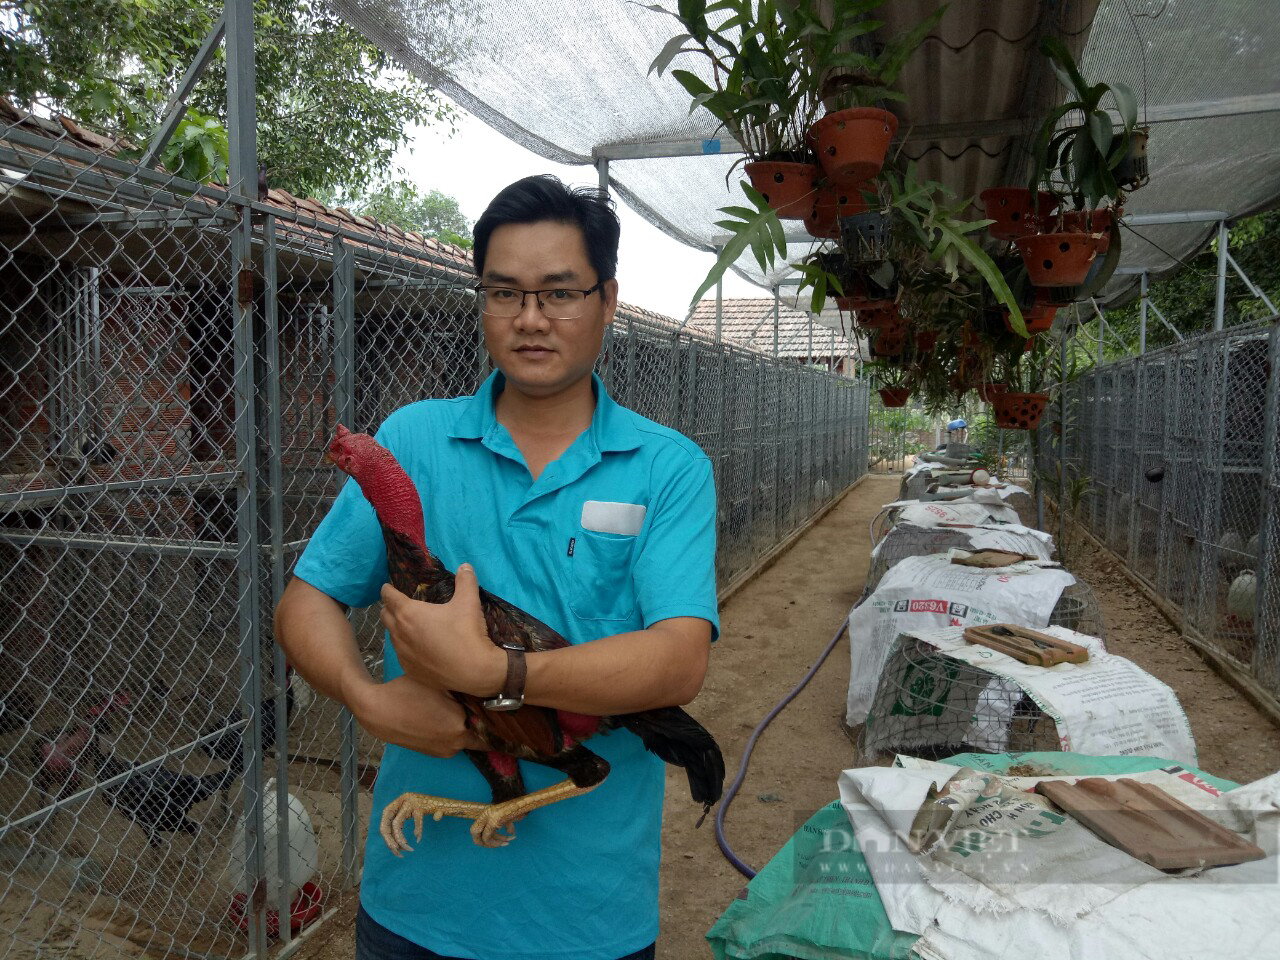 Nuôi gà nòi Tây Sơn, cho gà ăn toàn đồ sang chảnh, anh kỹ sư ở Bình Định lãi 1 tỷ/năm - Ảnh 1.